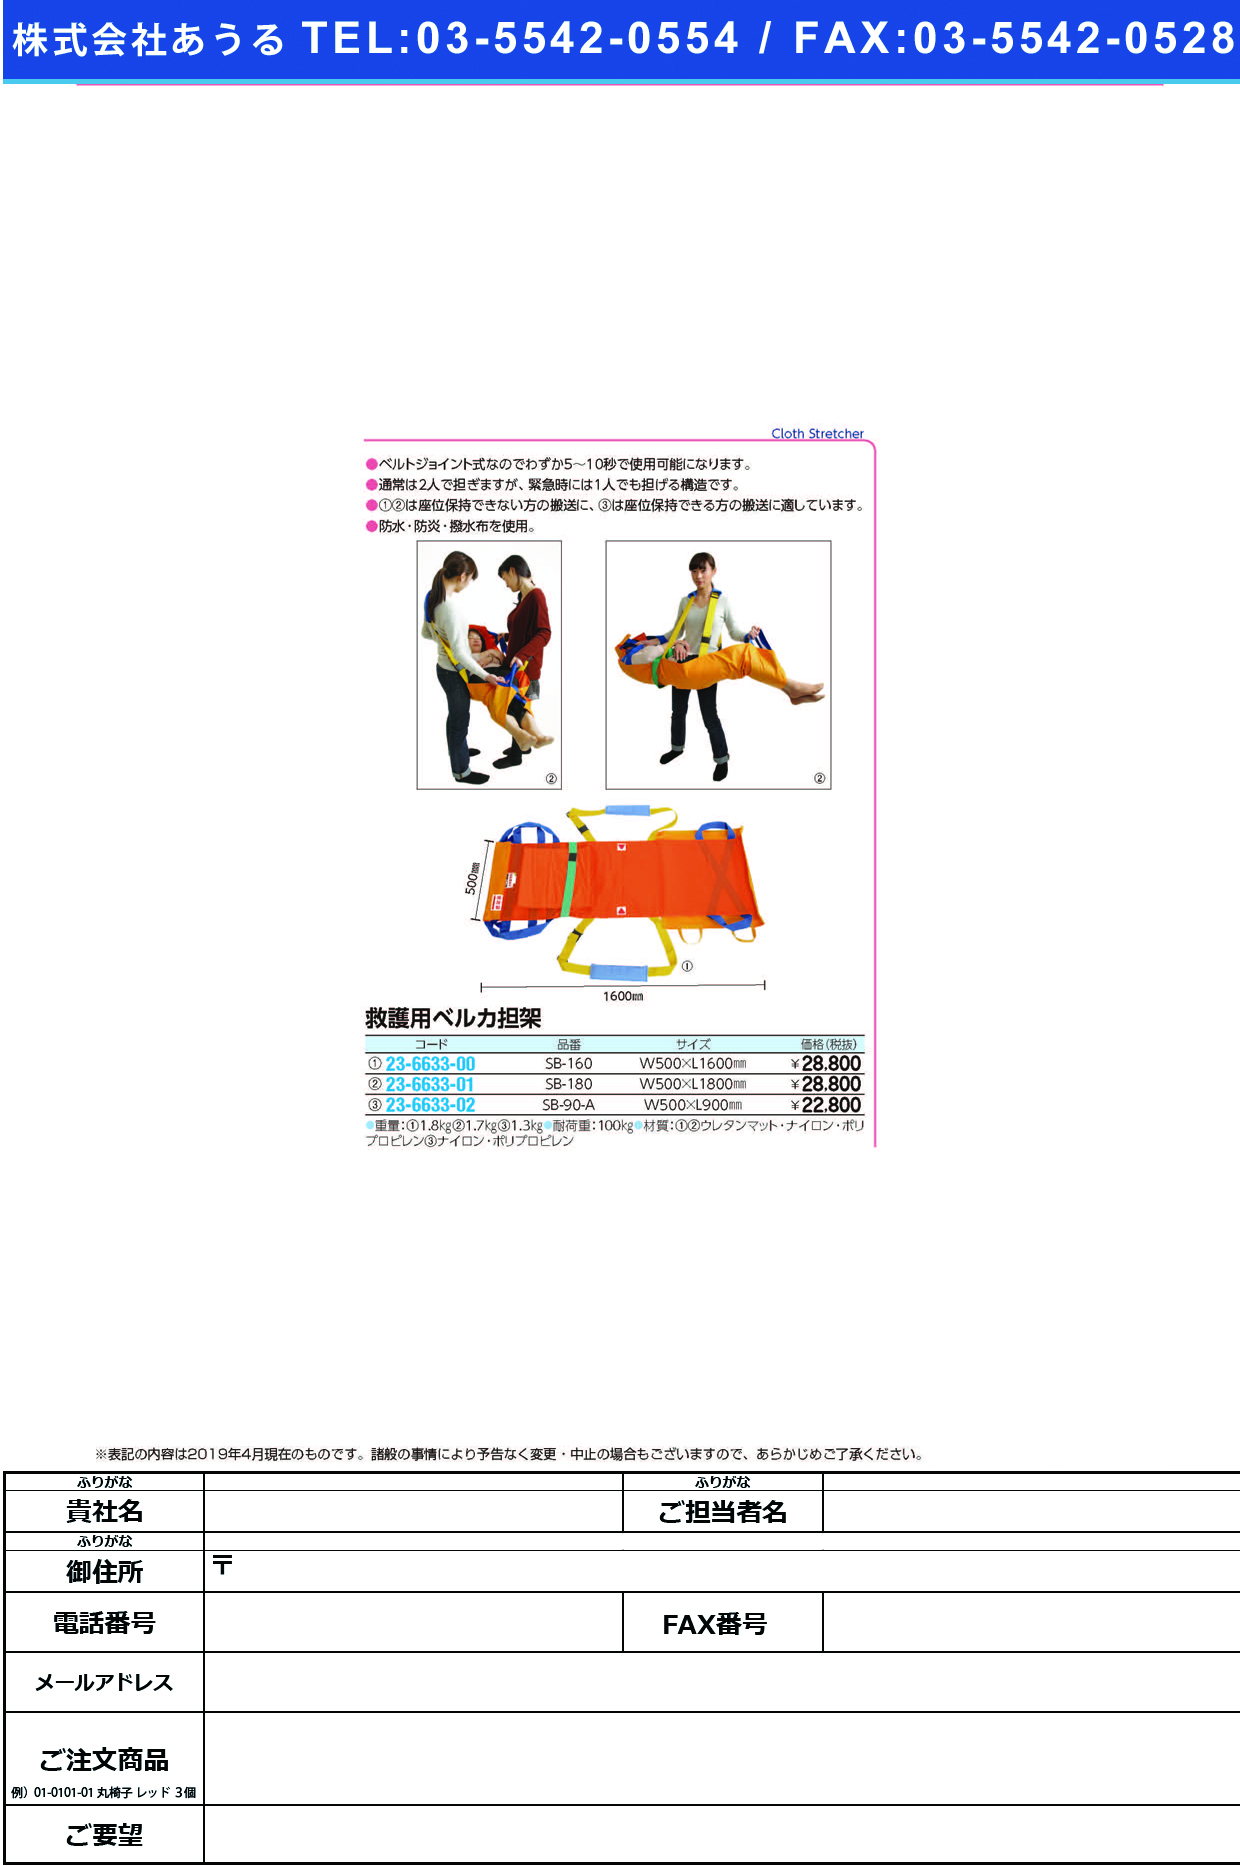 (23-6633-00)ベルカワンタッチ式救護担架 SB-160 ﾍﾞﾙｶﾜﾝﾀｯﾁｼｷｷｭｳｺﾞﾀﾝｶ【1枚単位】【2019年カタログ商品